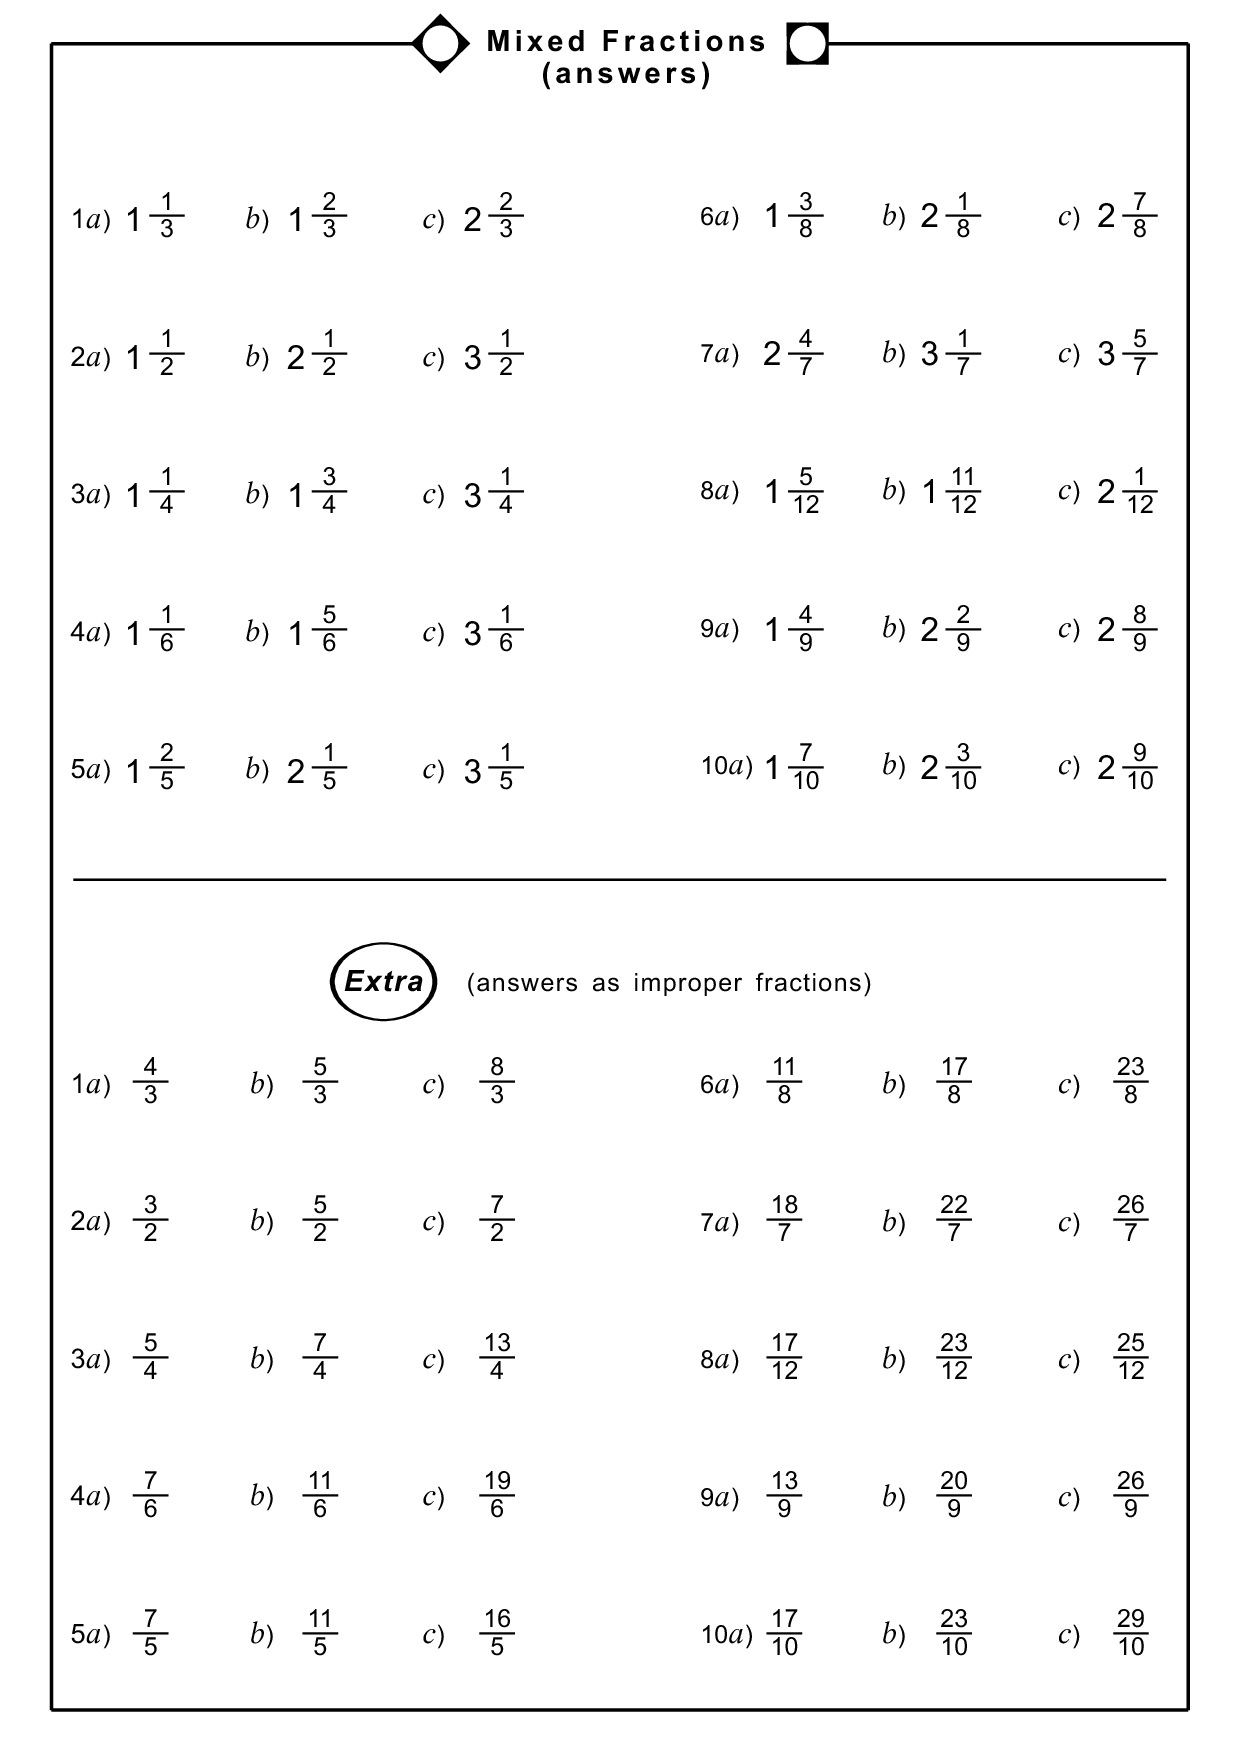 Improper Fraction And Mixed Number Worksheet